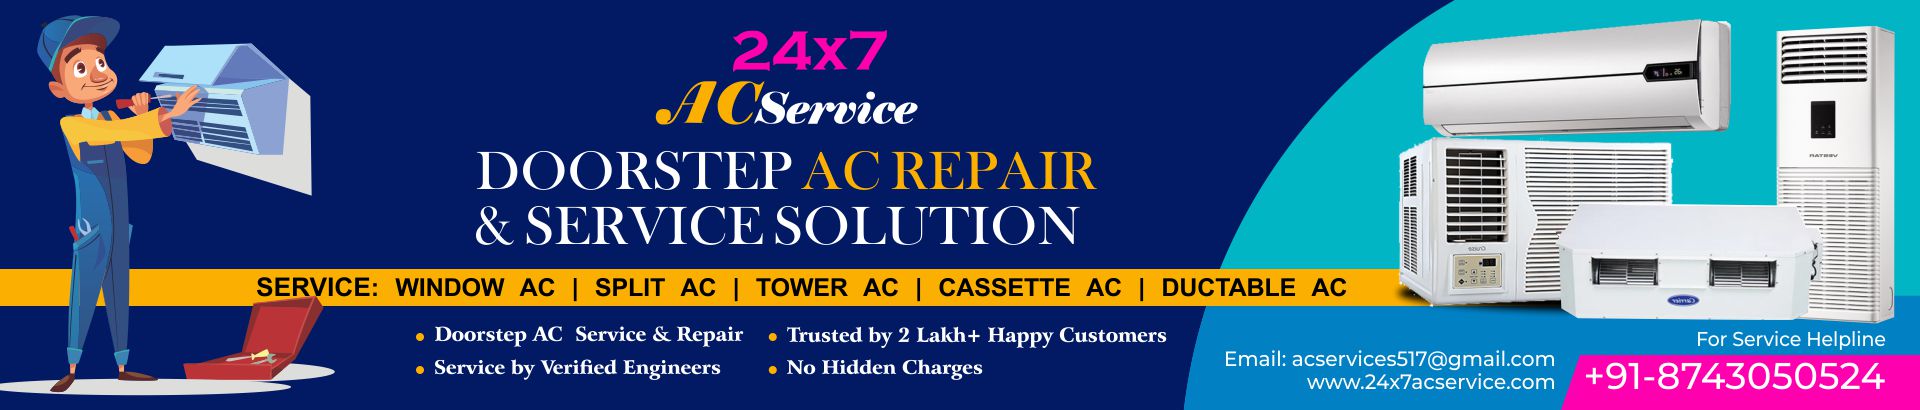 AC repair and service in Gurgaon